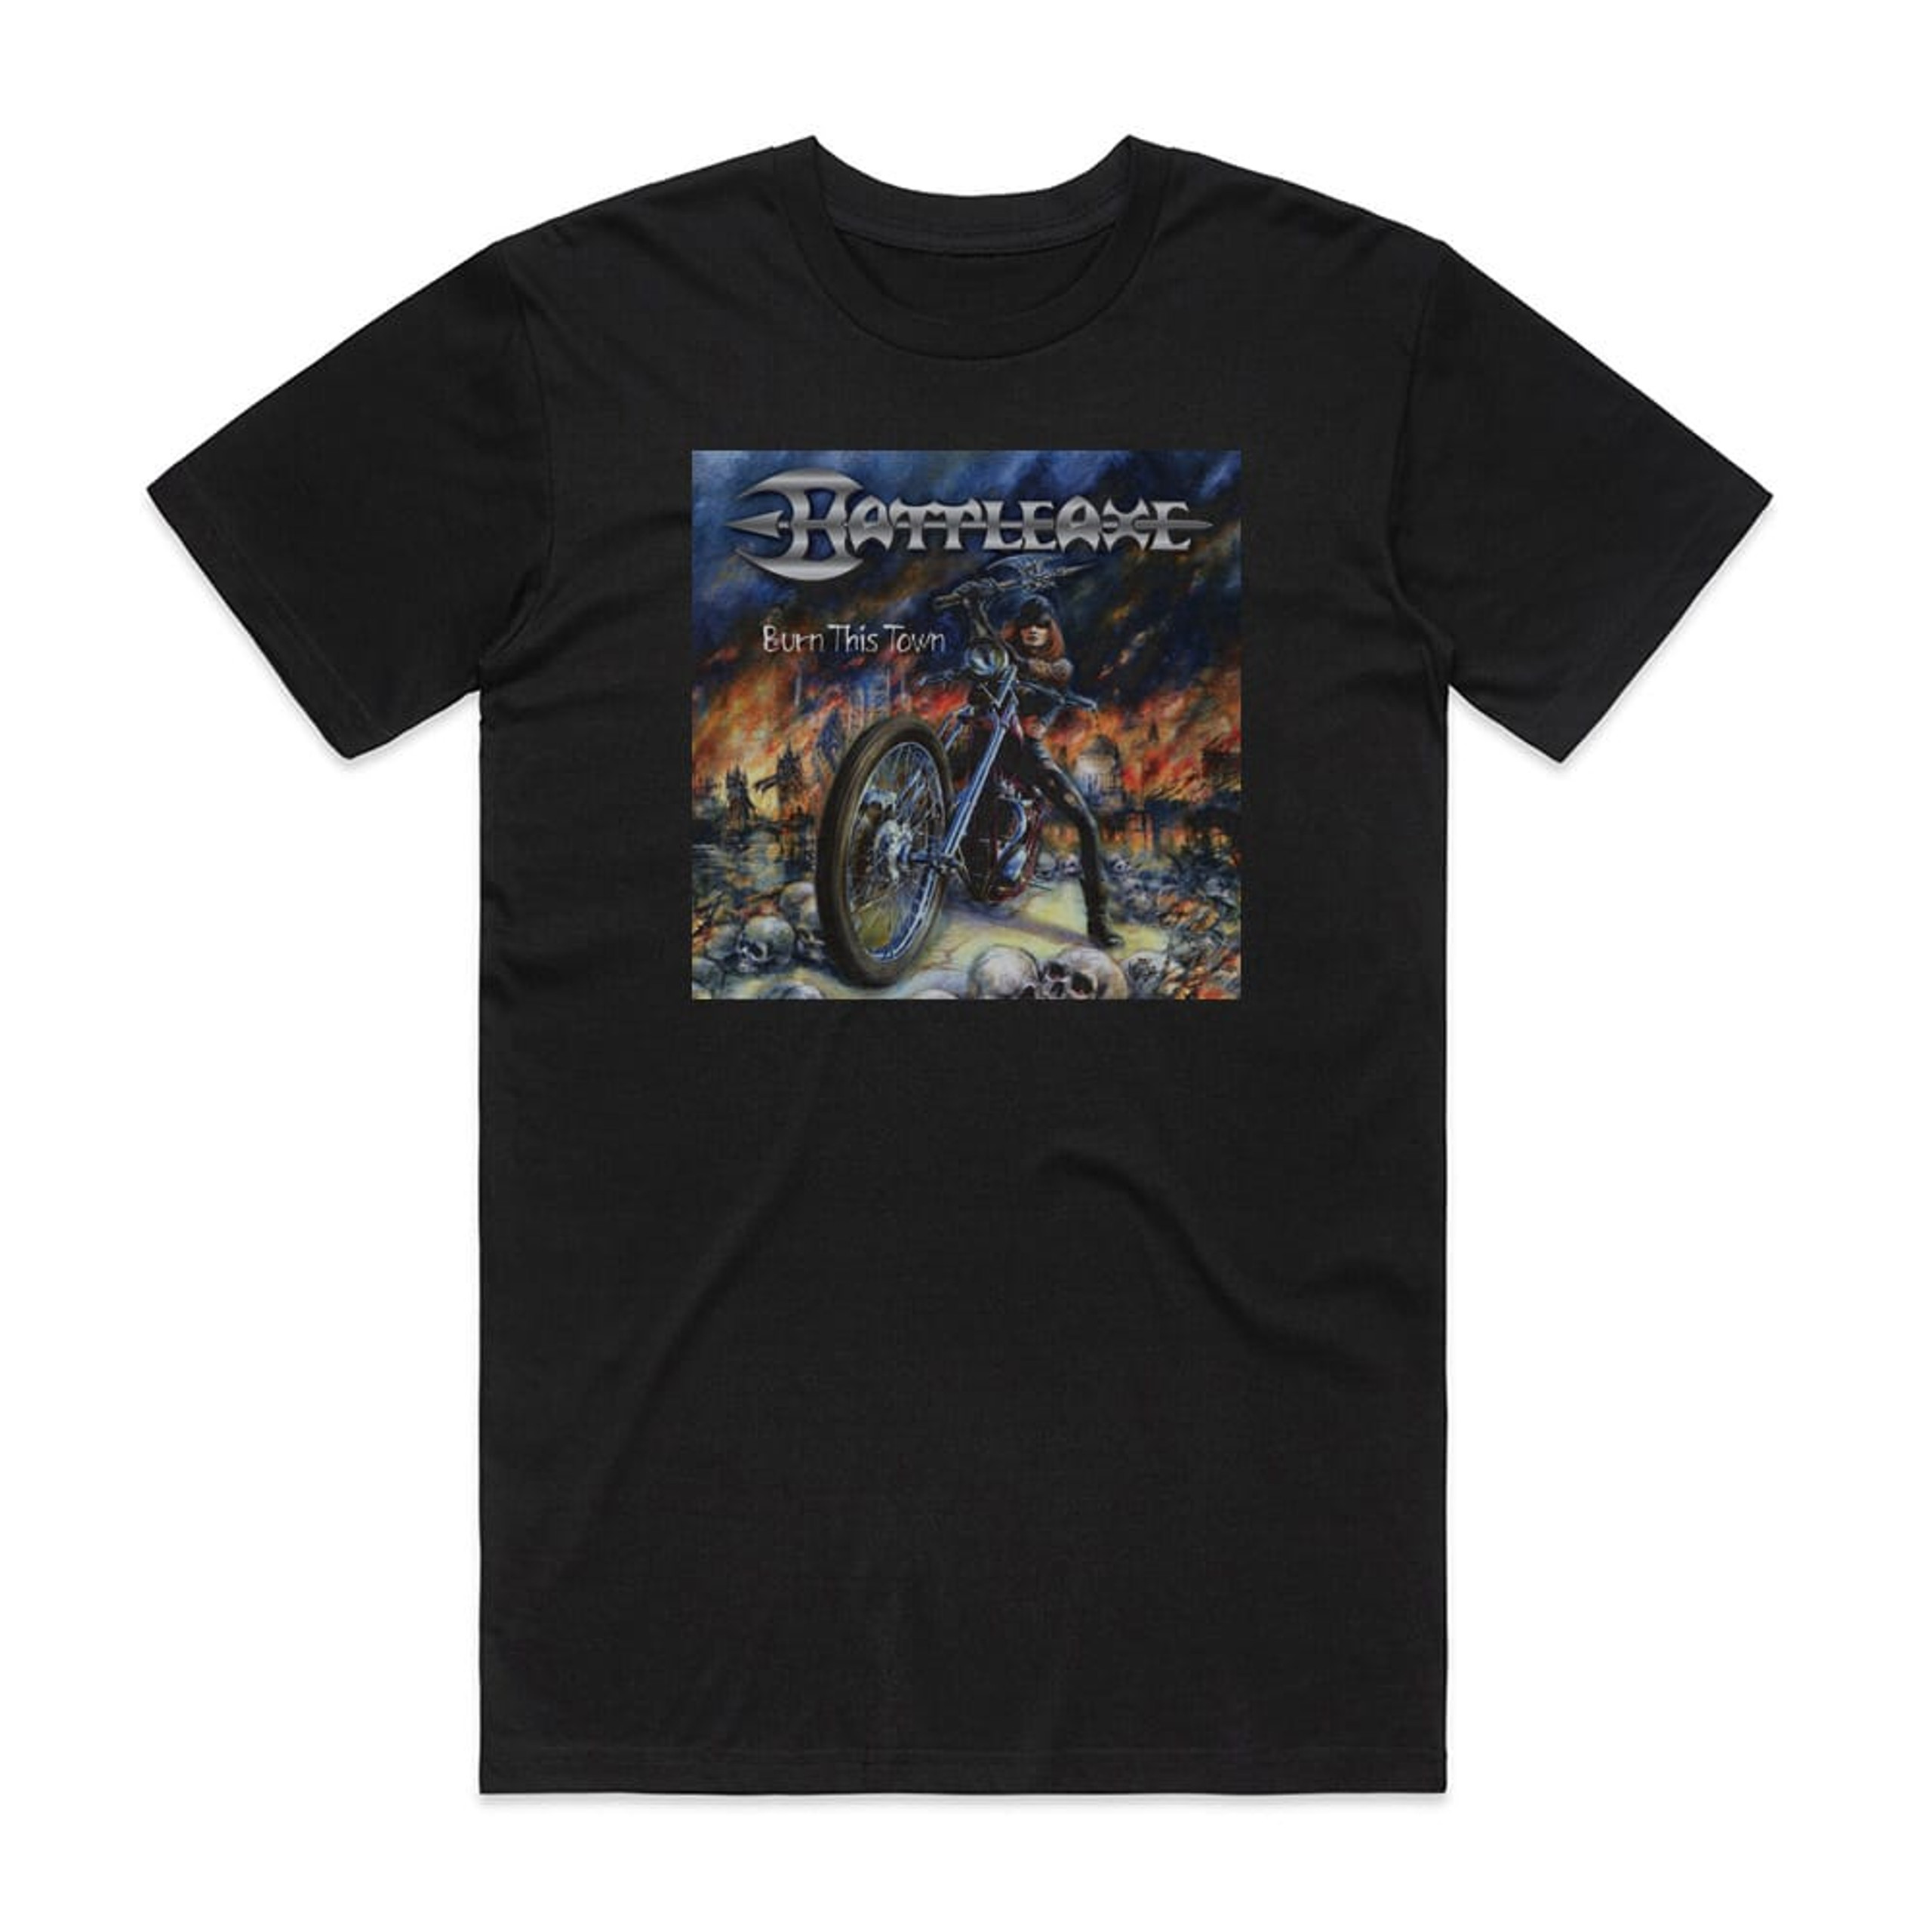 Battleaxe Burn This Town Album Cover T-Shirt Black